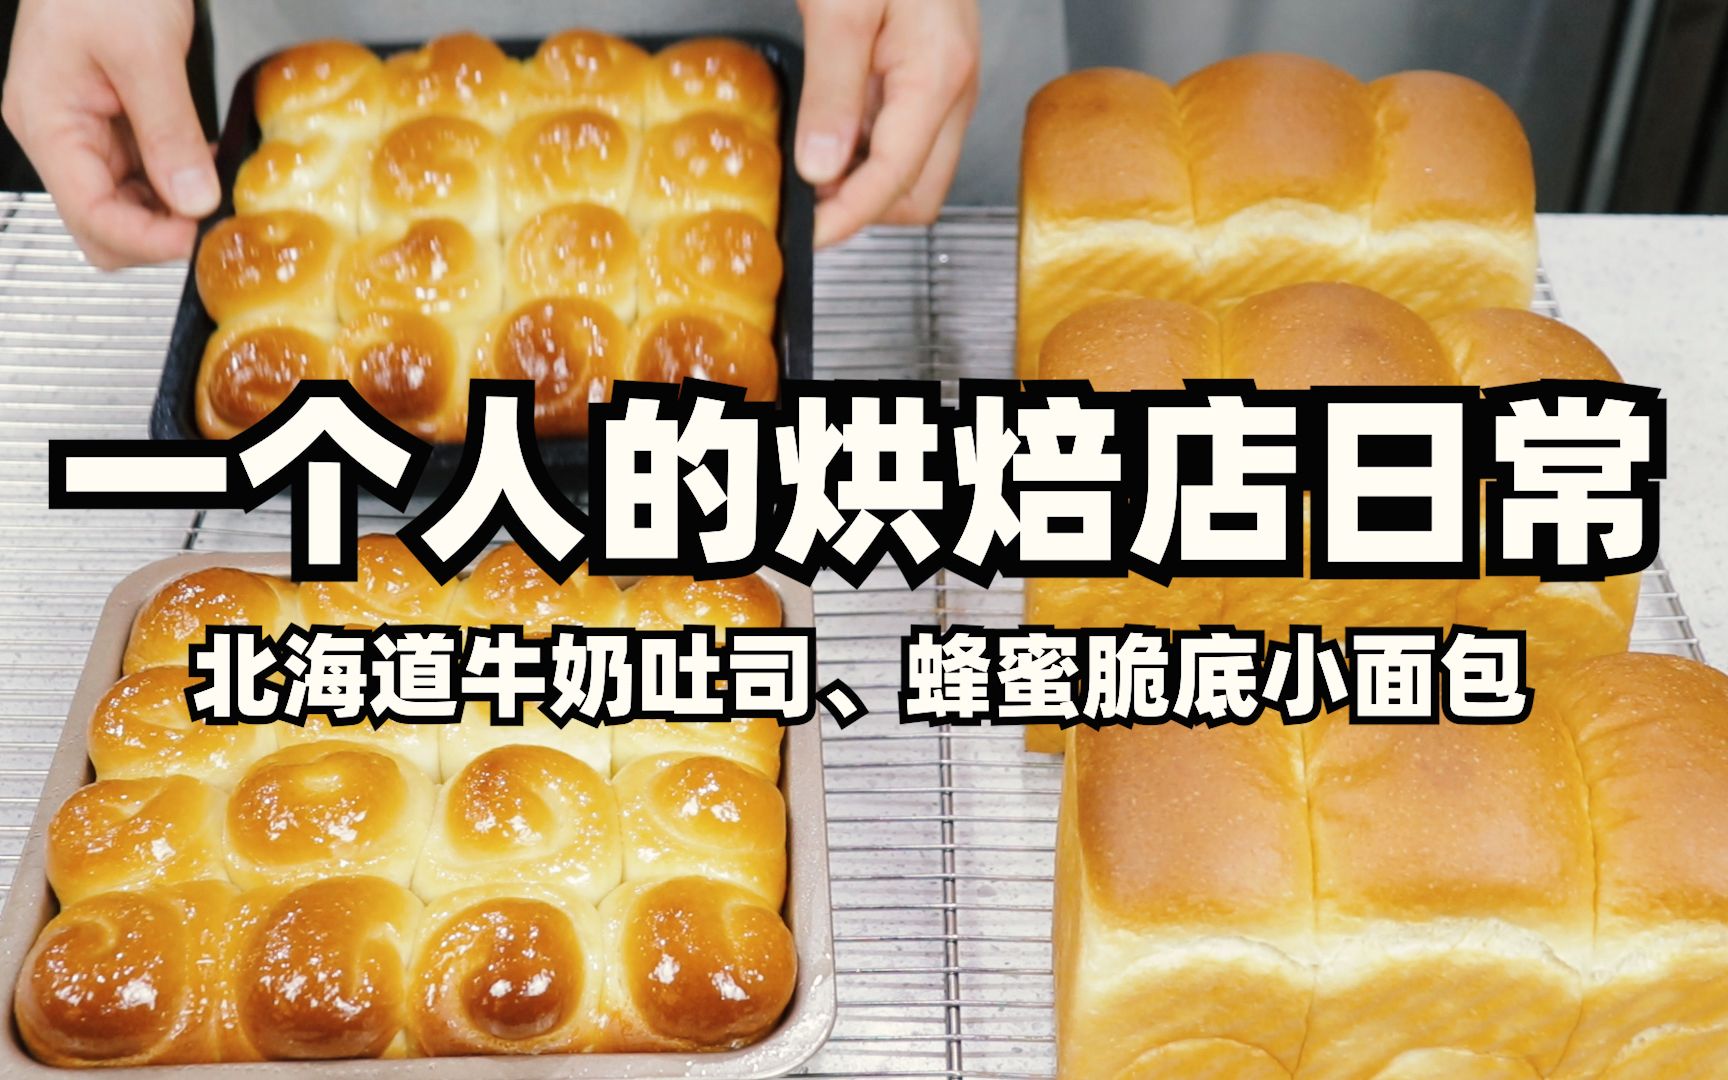 小女人的小天地: 【烘培日记】SKG面包机之北海道牛奶面包